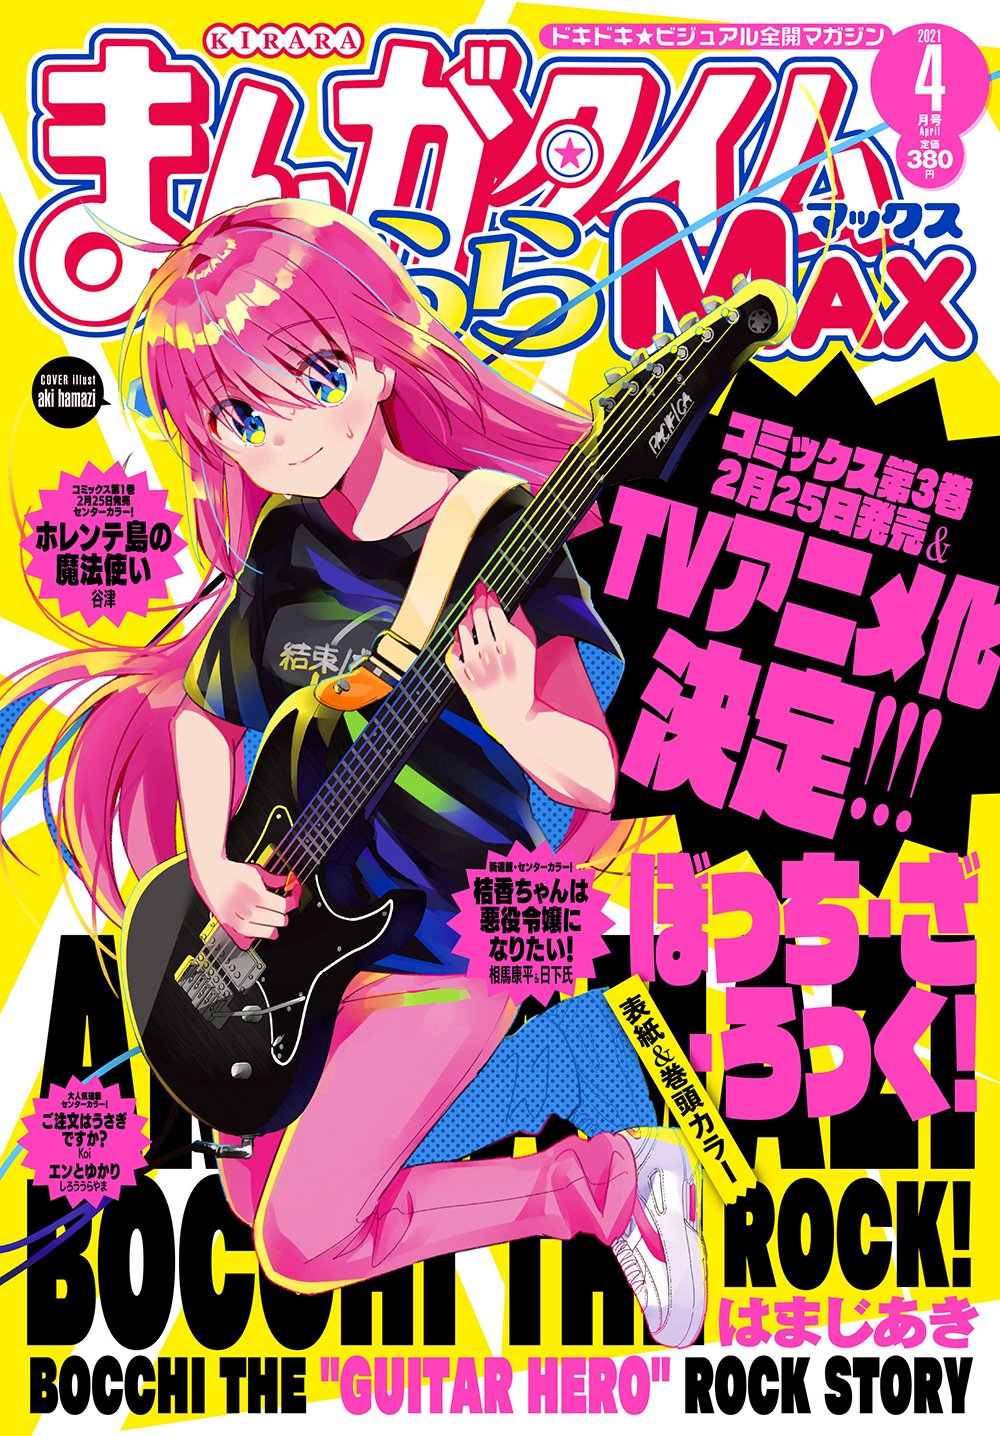 Manga Time Kirara MAX 2021年4月號封面：ぼっち・ざ・ろっく！.jpg